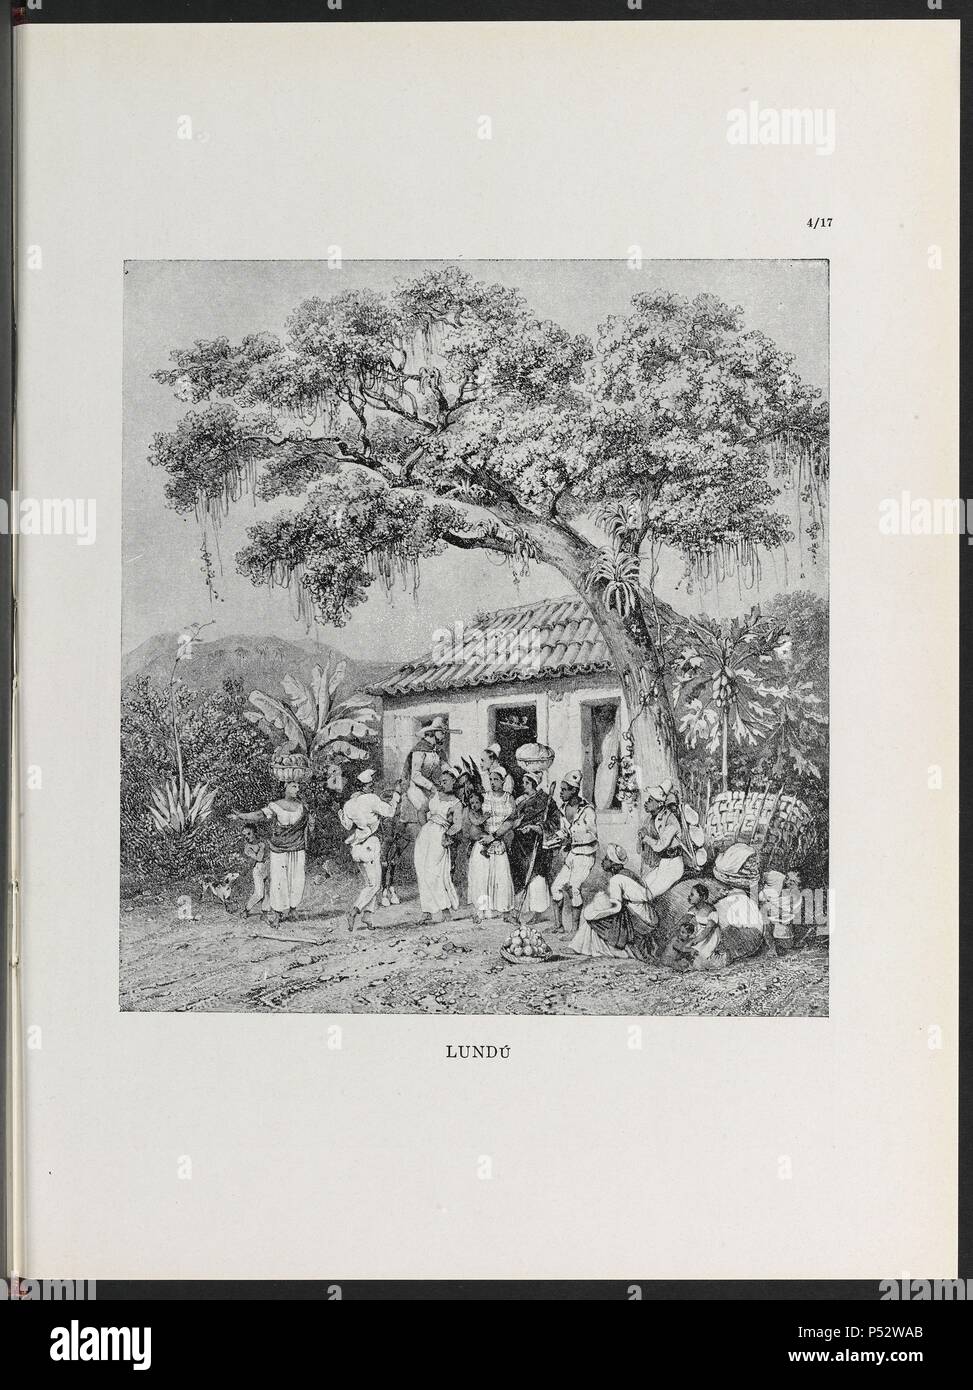 VIAGEM PINTORESCA ATRAVES DO BRASIL, LUNDU, LAMINA 96, 1835. Author: Johann Moritz Rugendas (1802-1858). Stock Photo